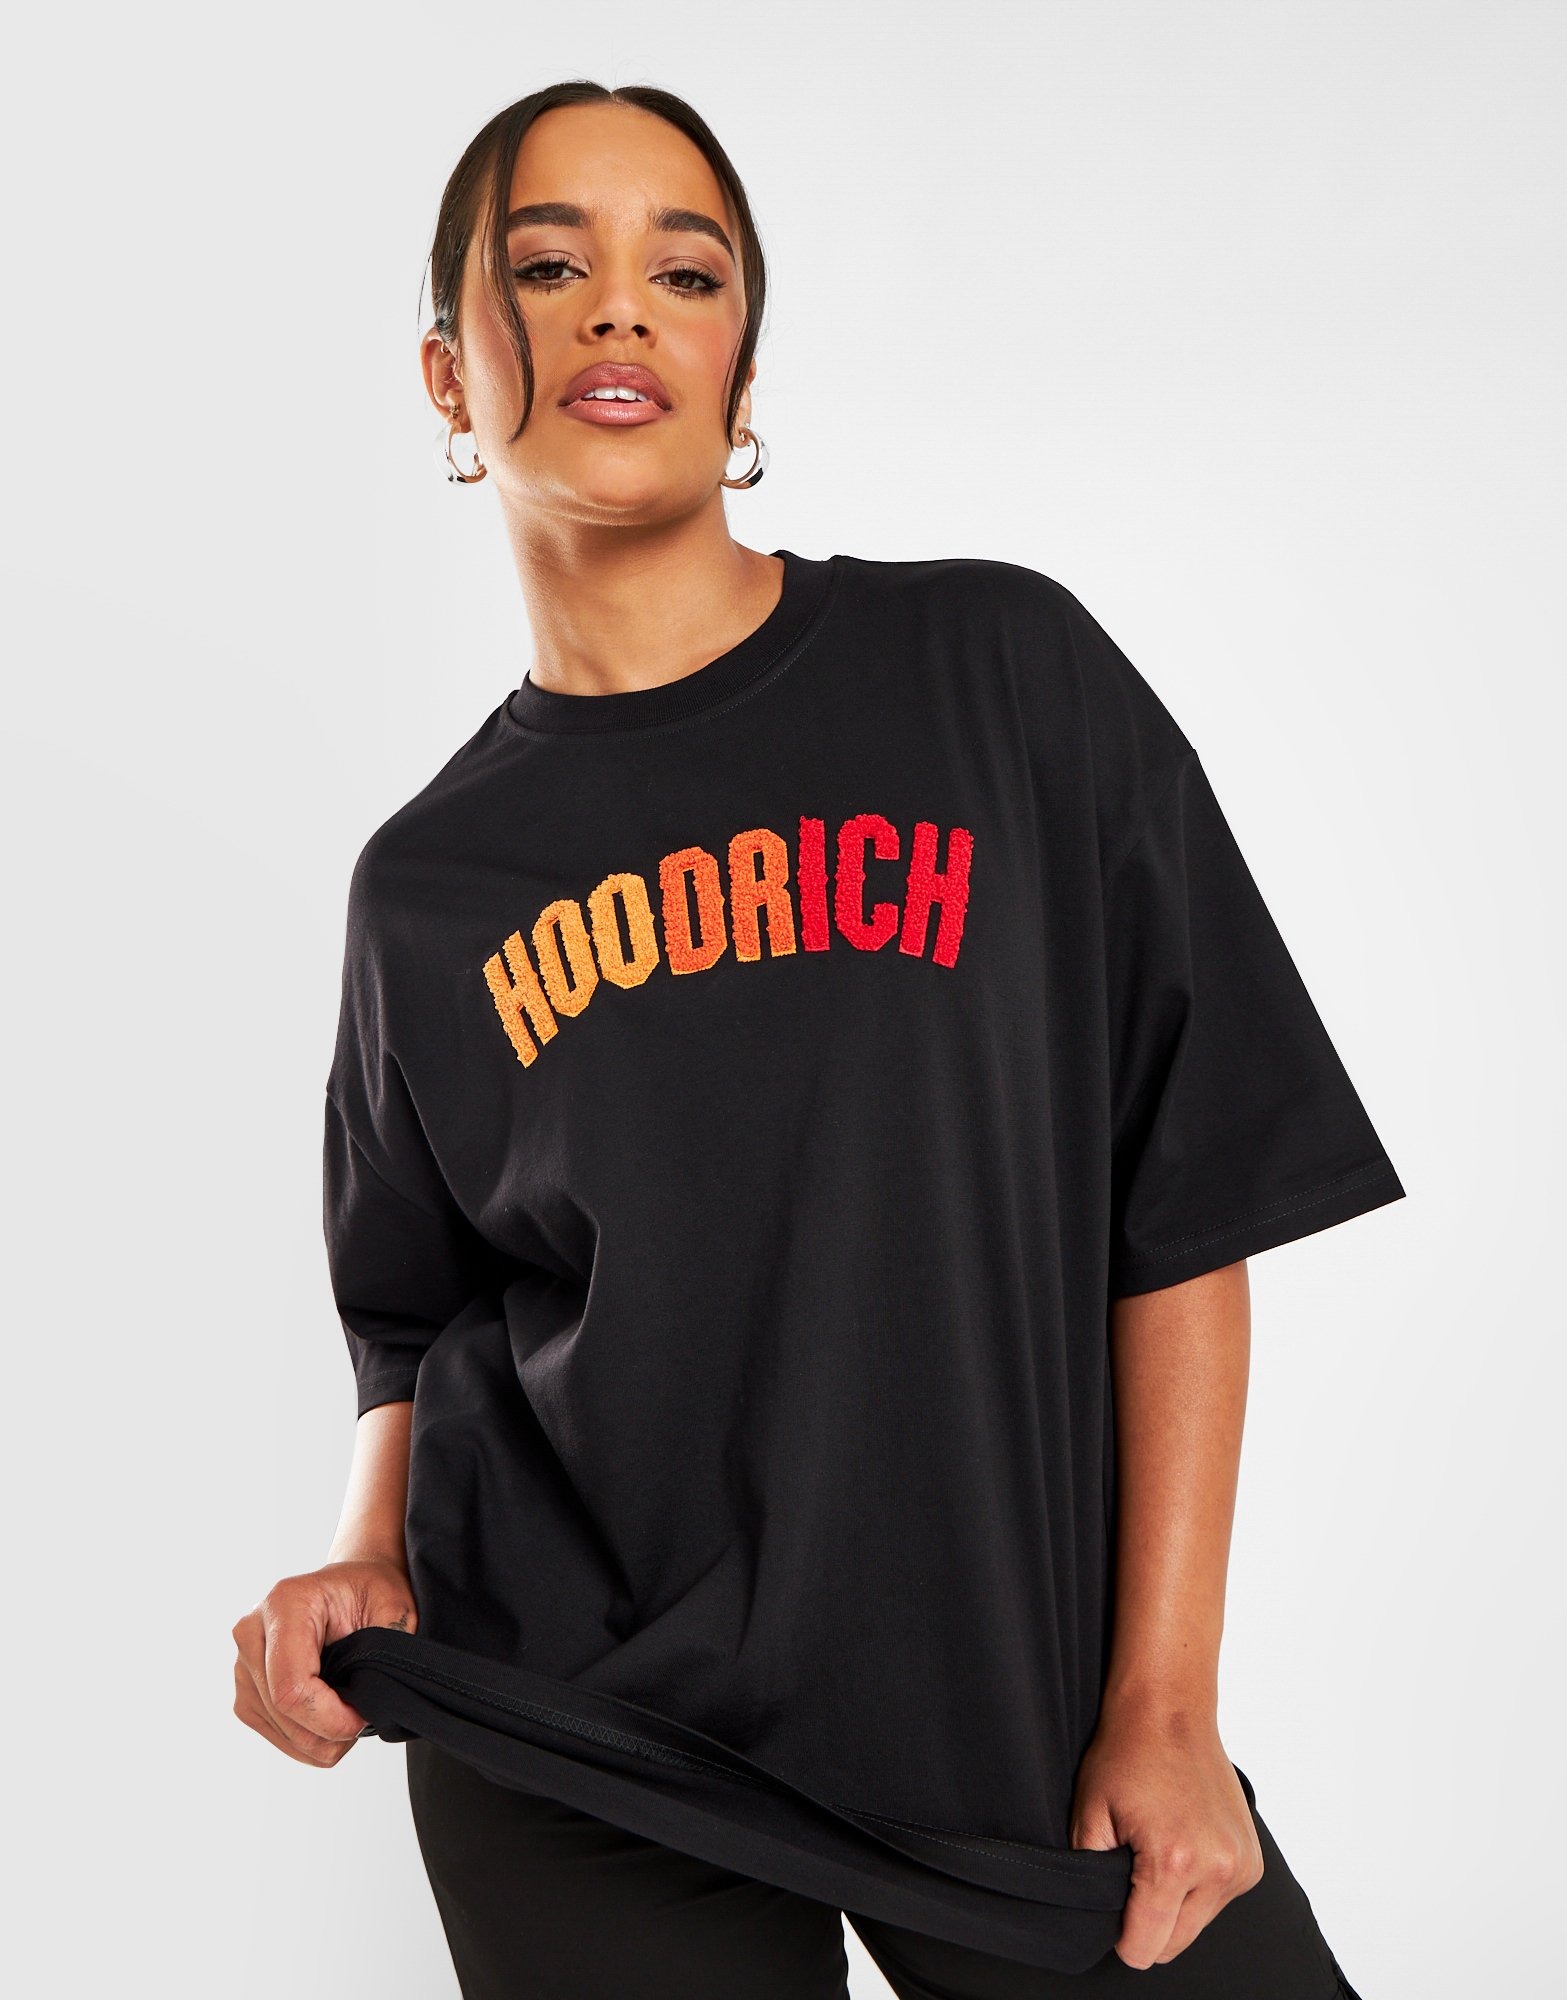 Hoodrich Kraze T-Shirt - JD Sports NZ